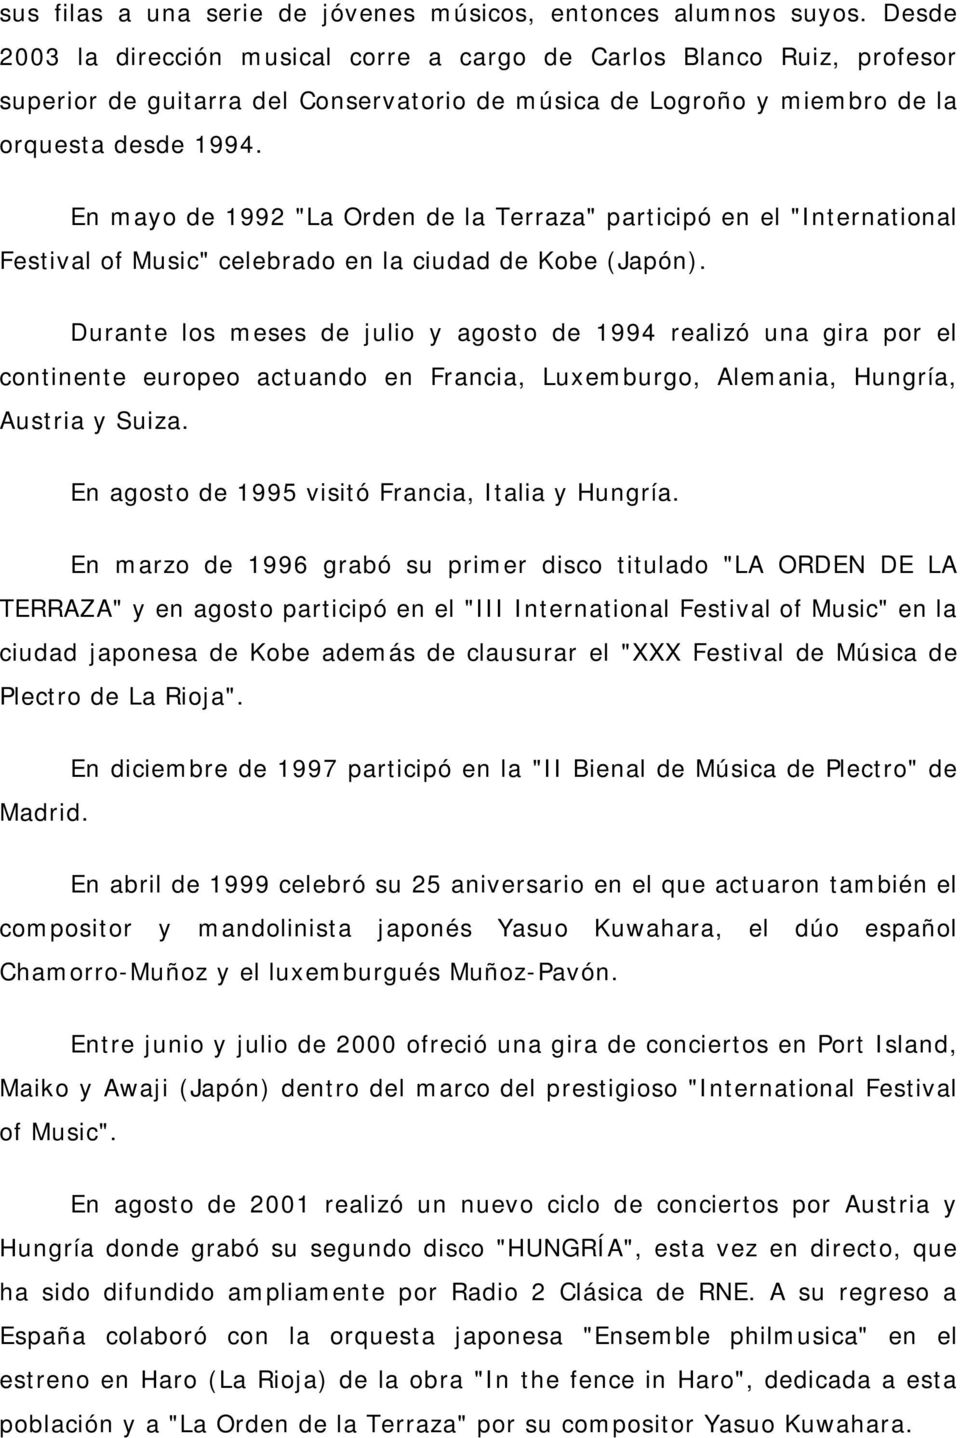 En mayo de 1992 "La Orden de la Terraza" participó en el "International Festival of Music" celebrado en la ciudad de Kobe (Japón).